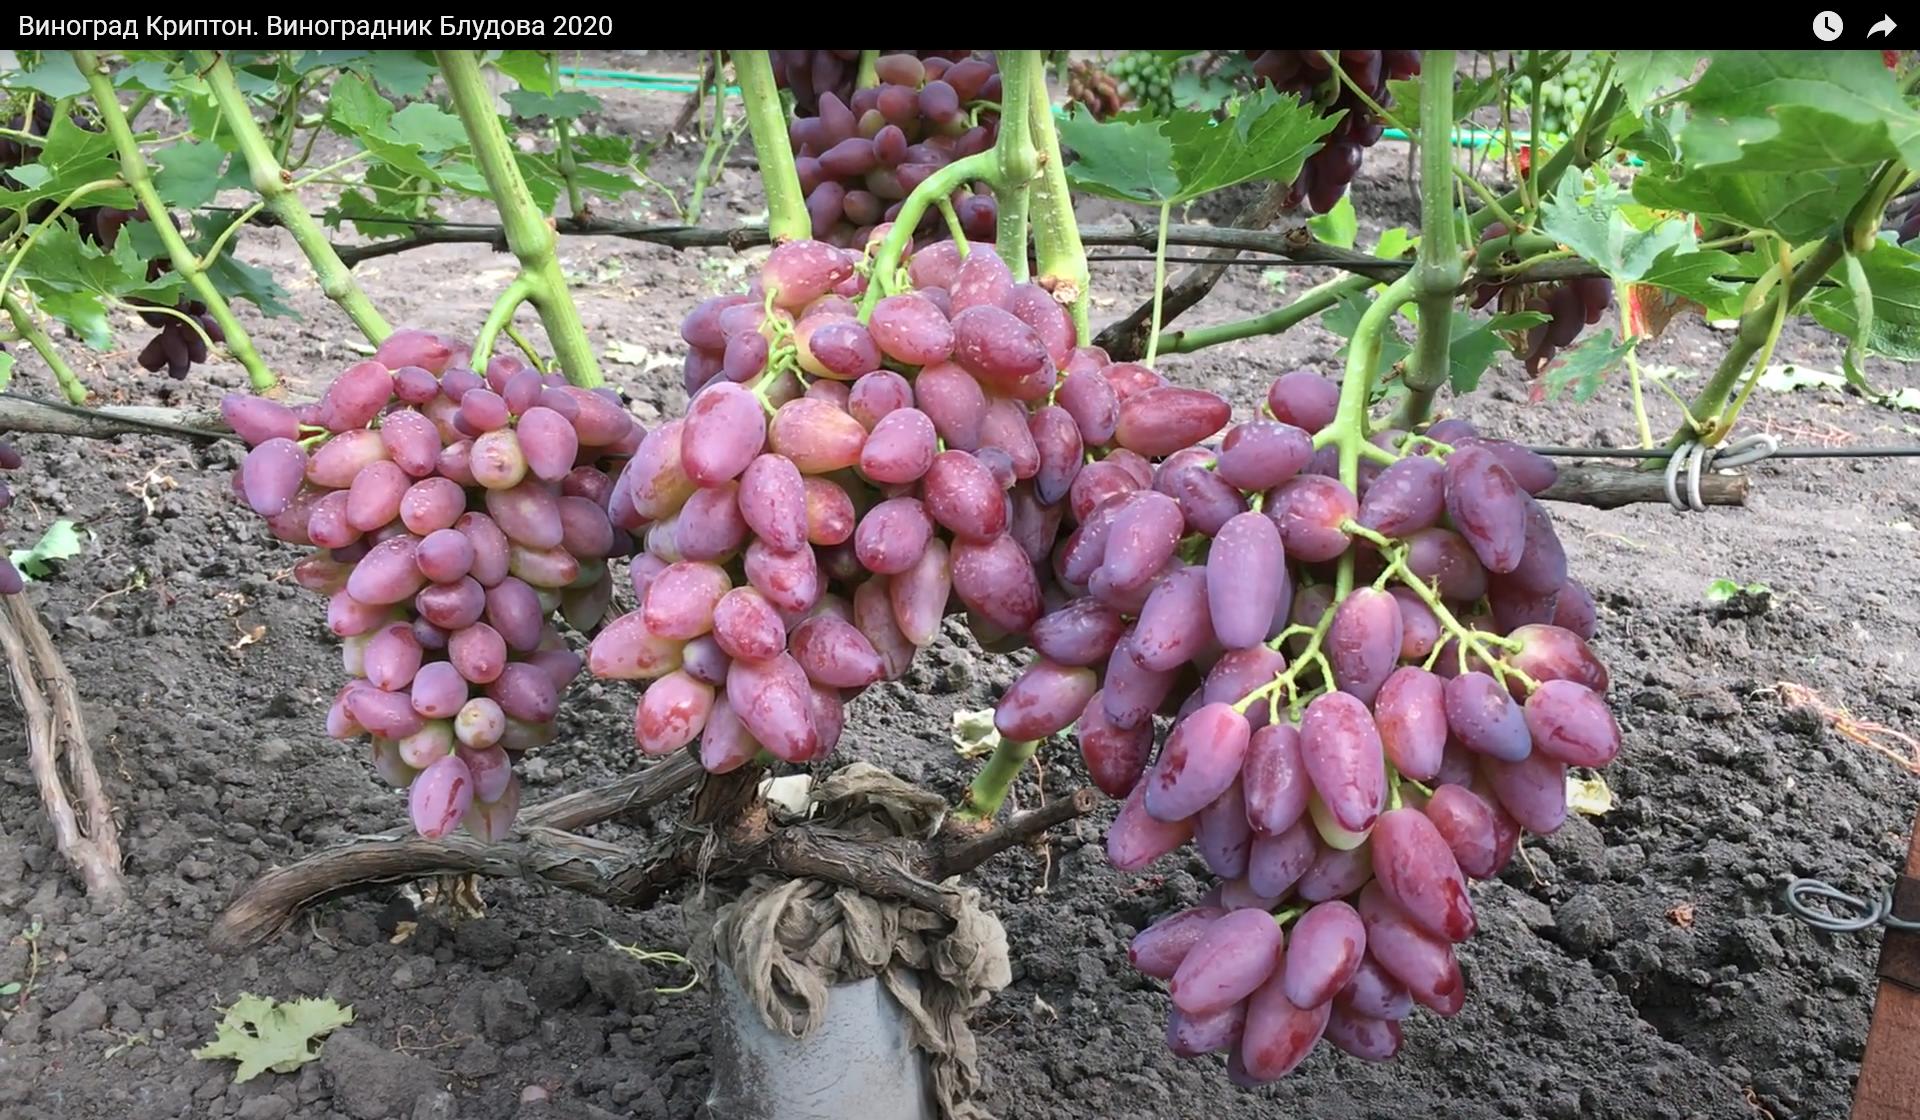 Виноград Криптон на участке Блудова, урожай 2020.